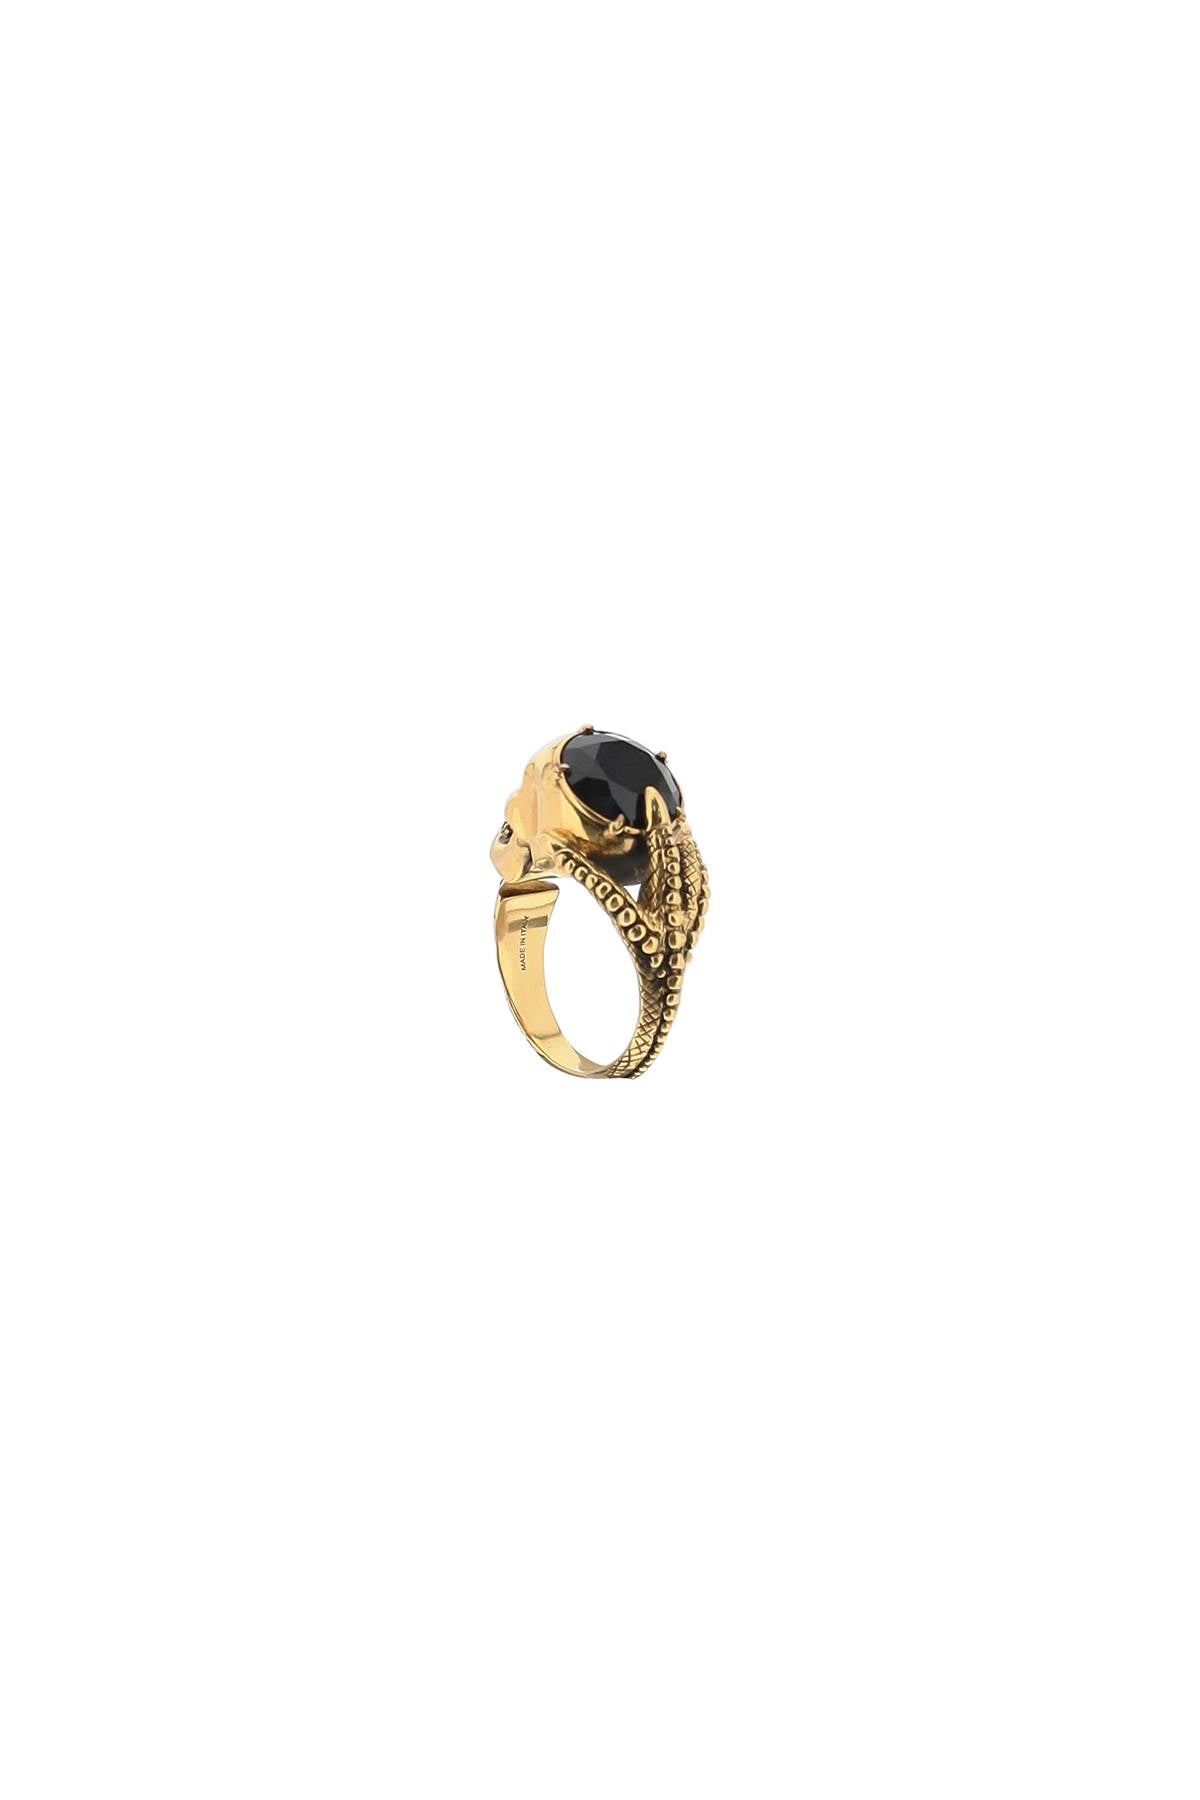 Alexander Mcqueen Victorian Skull Ring   Gold